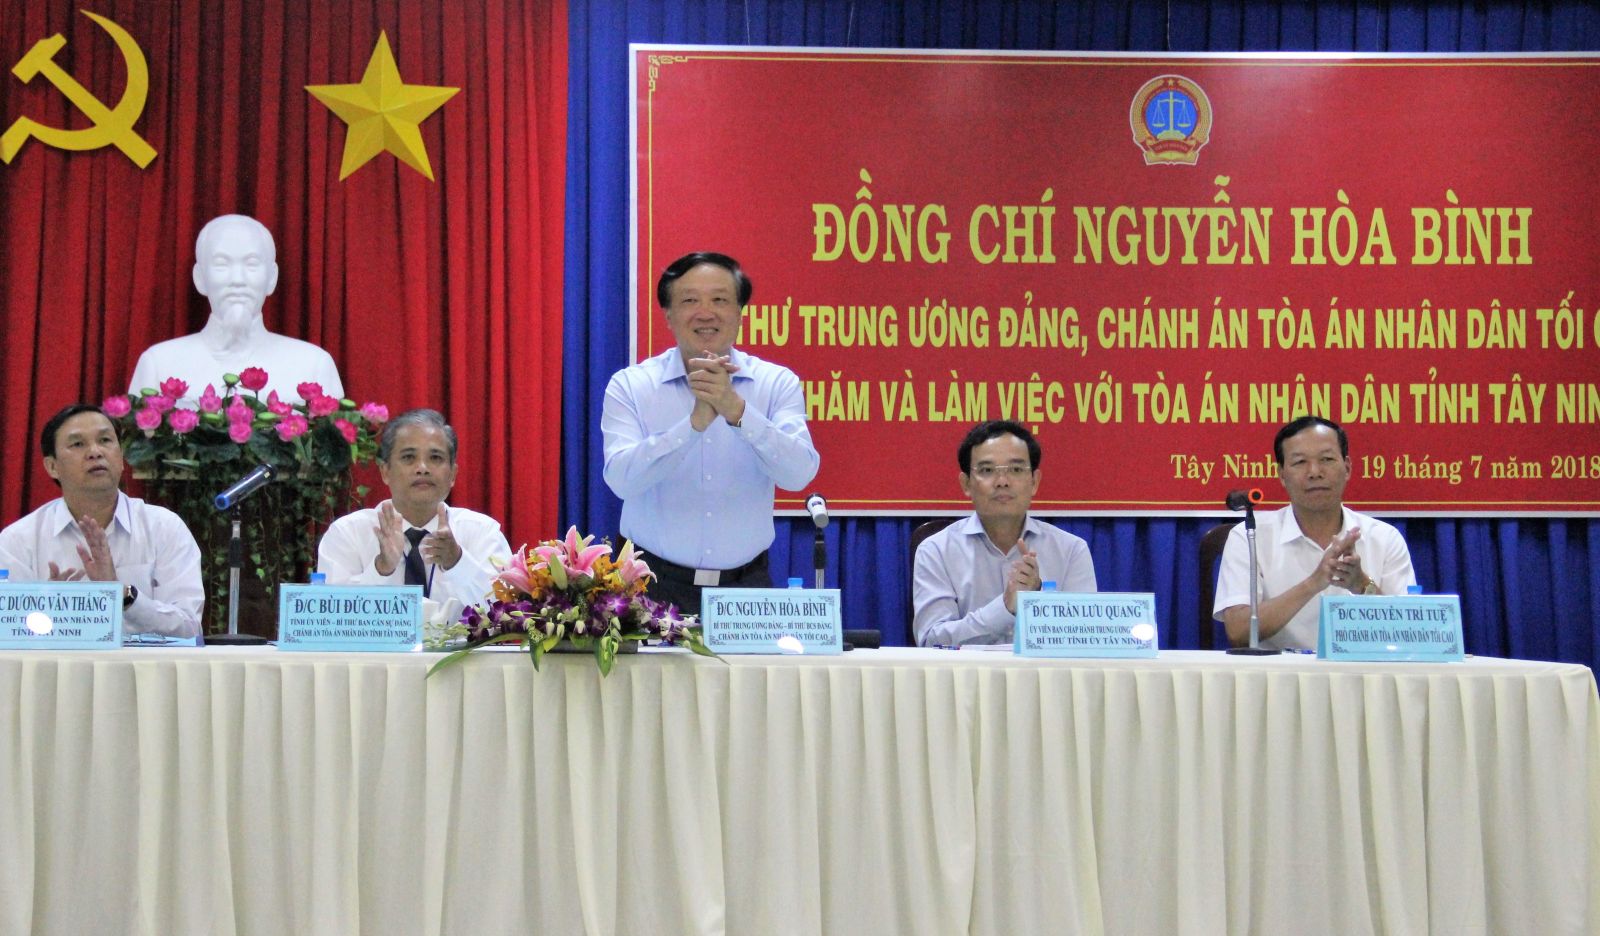 Điểm báo in Tây Ninh ngày 21.7.2018